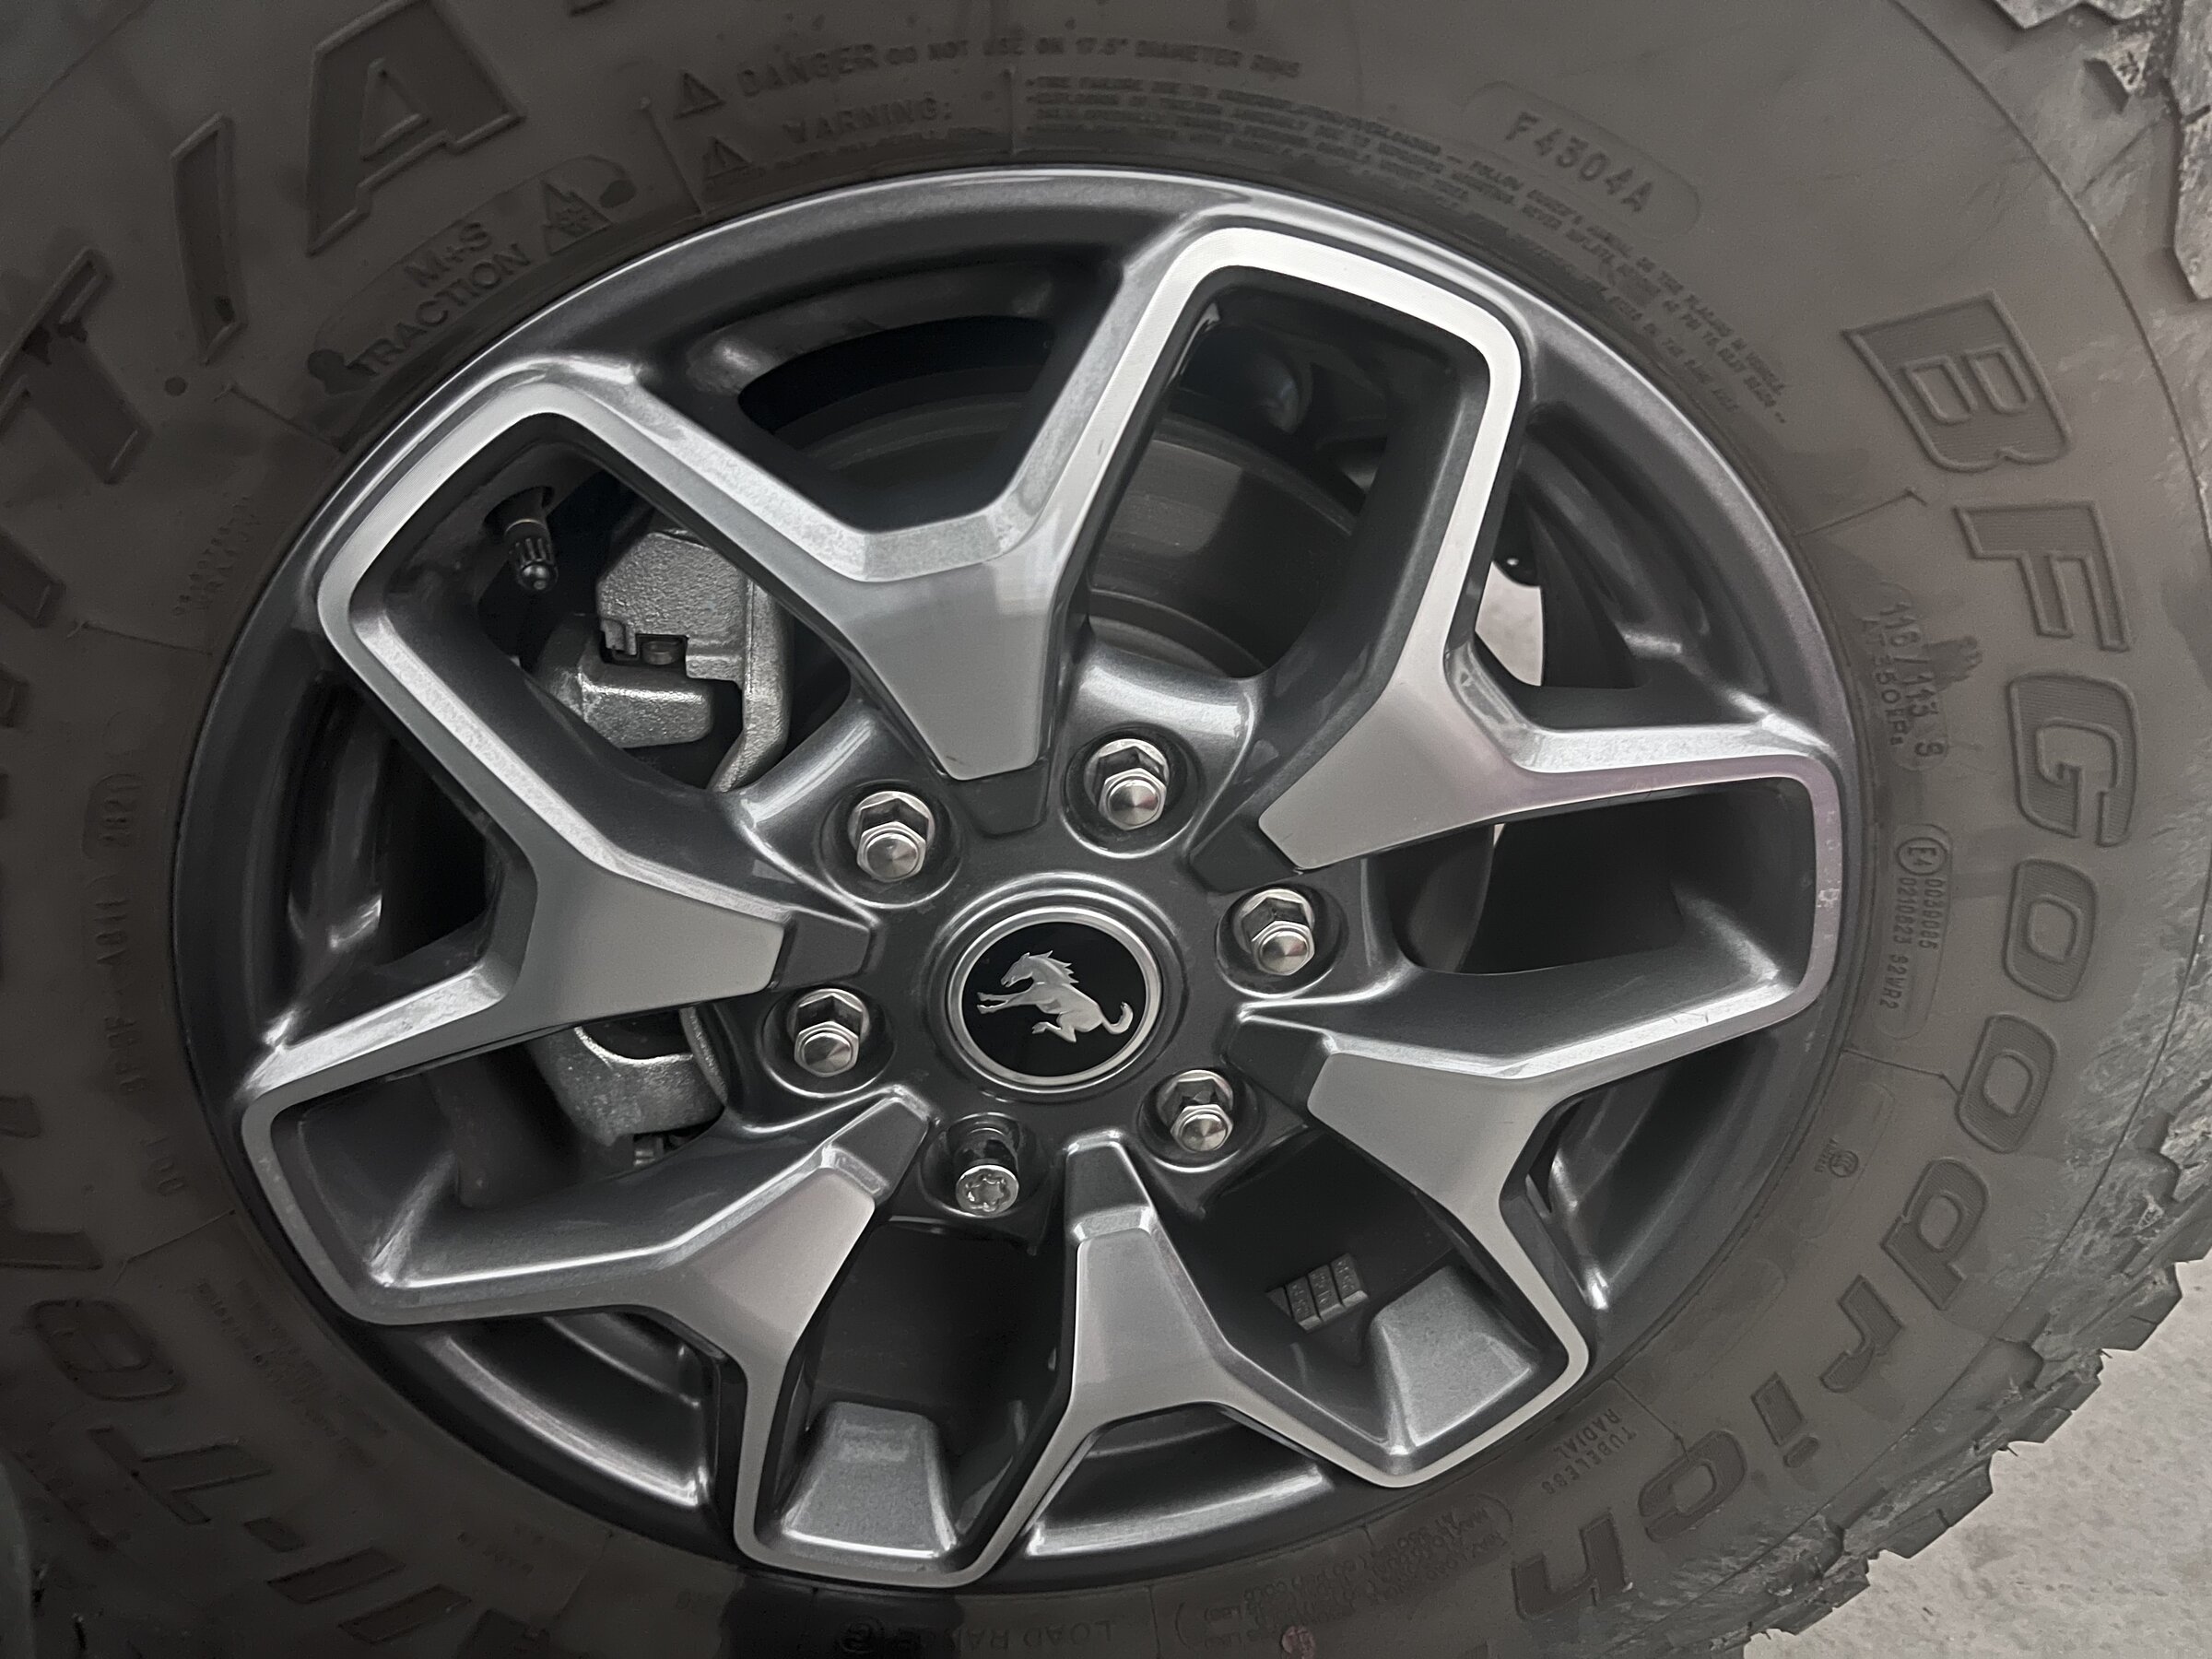 Ford Bronco Badlands wheels $200 E6F43A36-05EB-41C8-A46E-F2F9466F532D